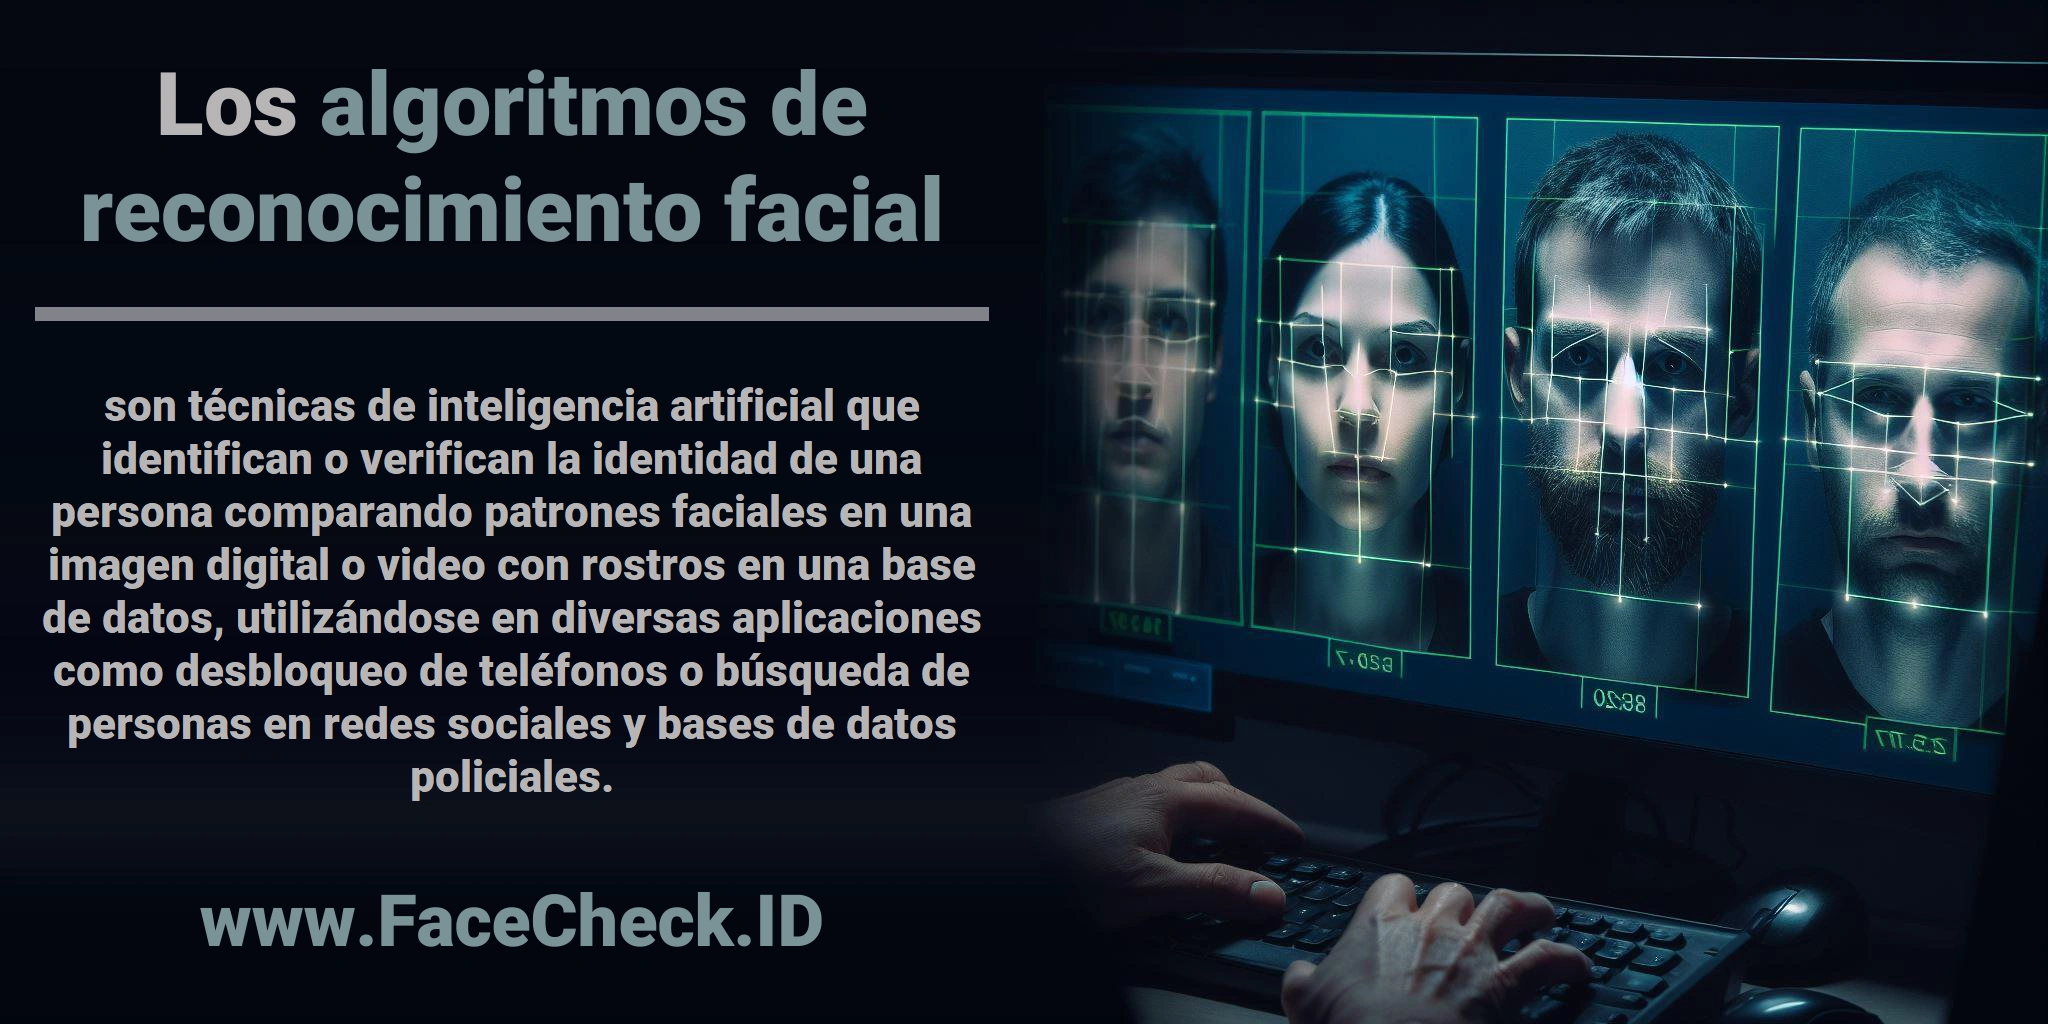 Los <b>algoritmos de reconocimiento facial</b> son técnicas de inteligencia artificial que identifican o verifican la identidad de una persona comparando patrones faciales en una imagen digital o video con rostros en una base de datos, utilizándose en diversas aplicaciones como desbloqueo de teléfonos o búsqueda de personas en redes sociales y bases de datos policiales.